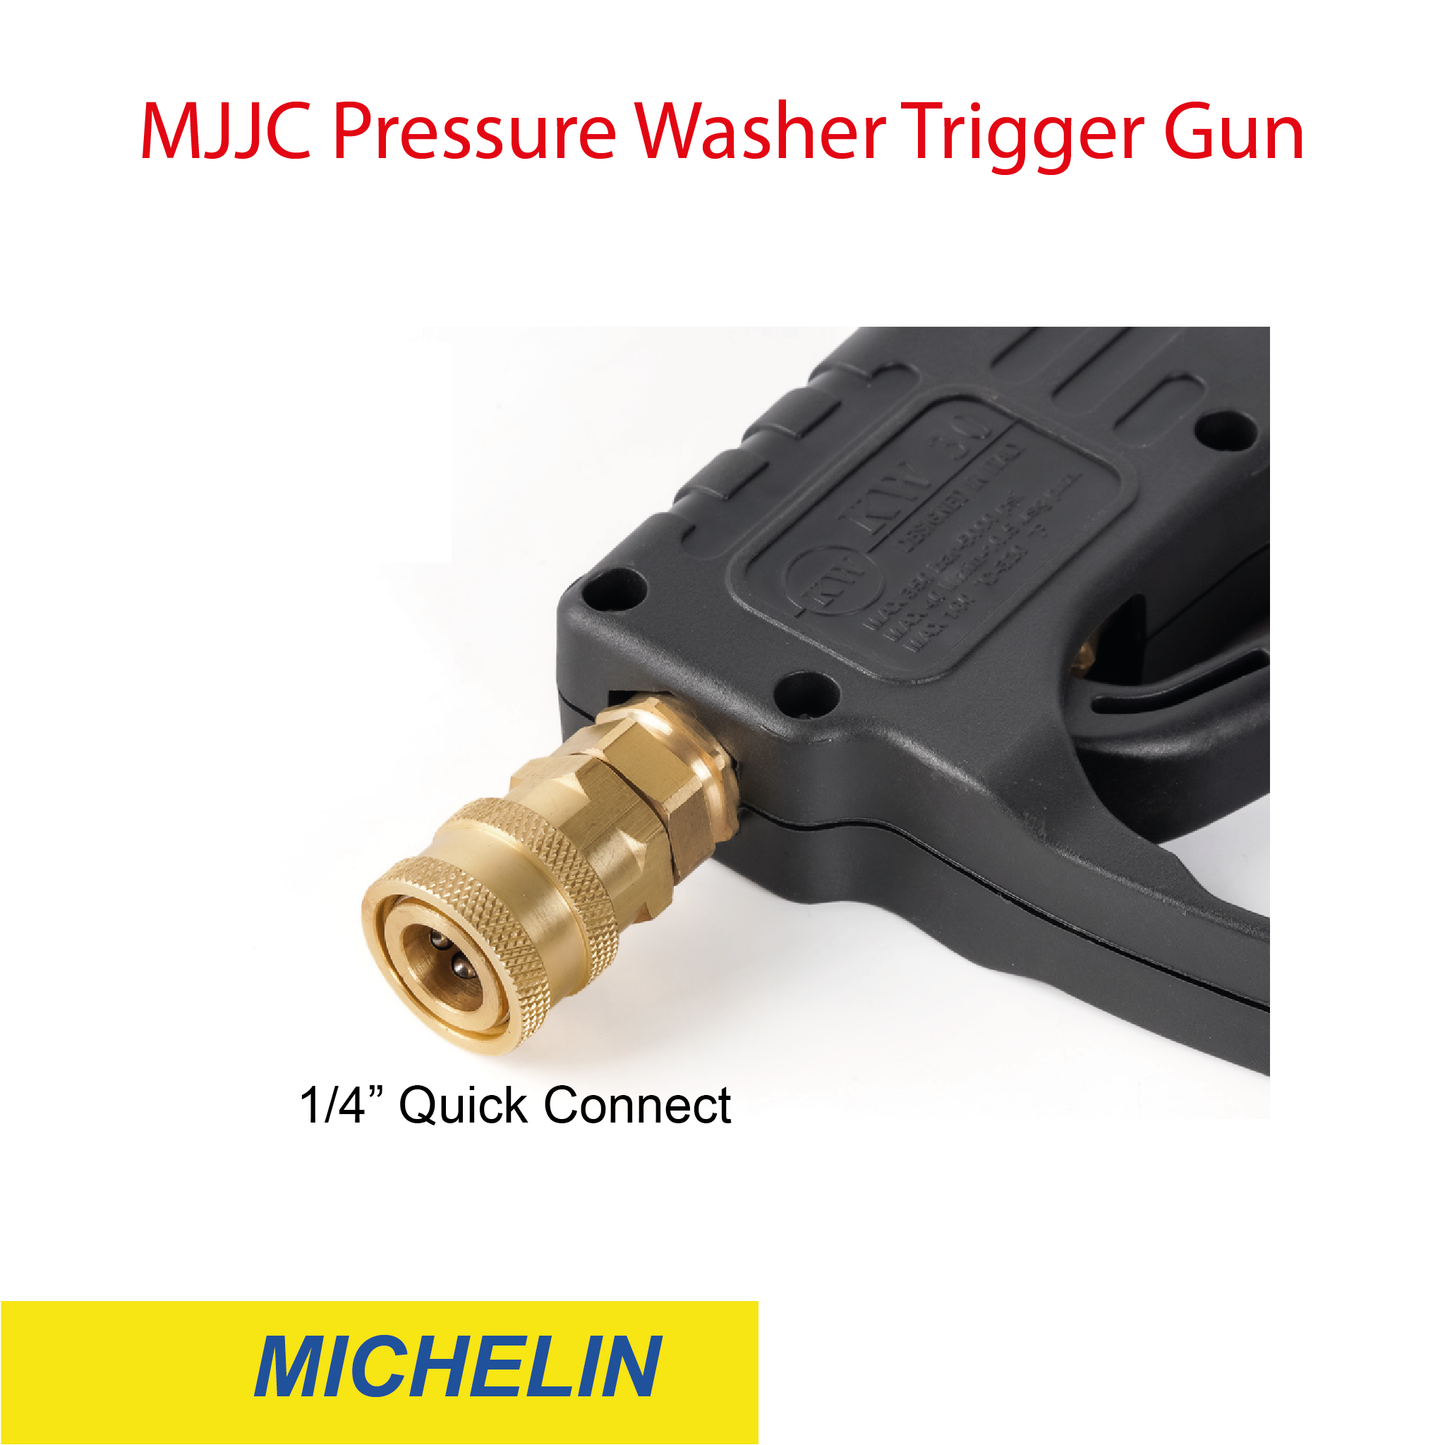 Michelin - MJJC Light Weight Pressure Washer Trigger Spray Gun with Live Swivel